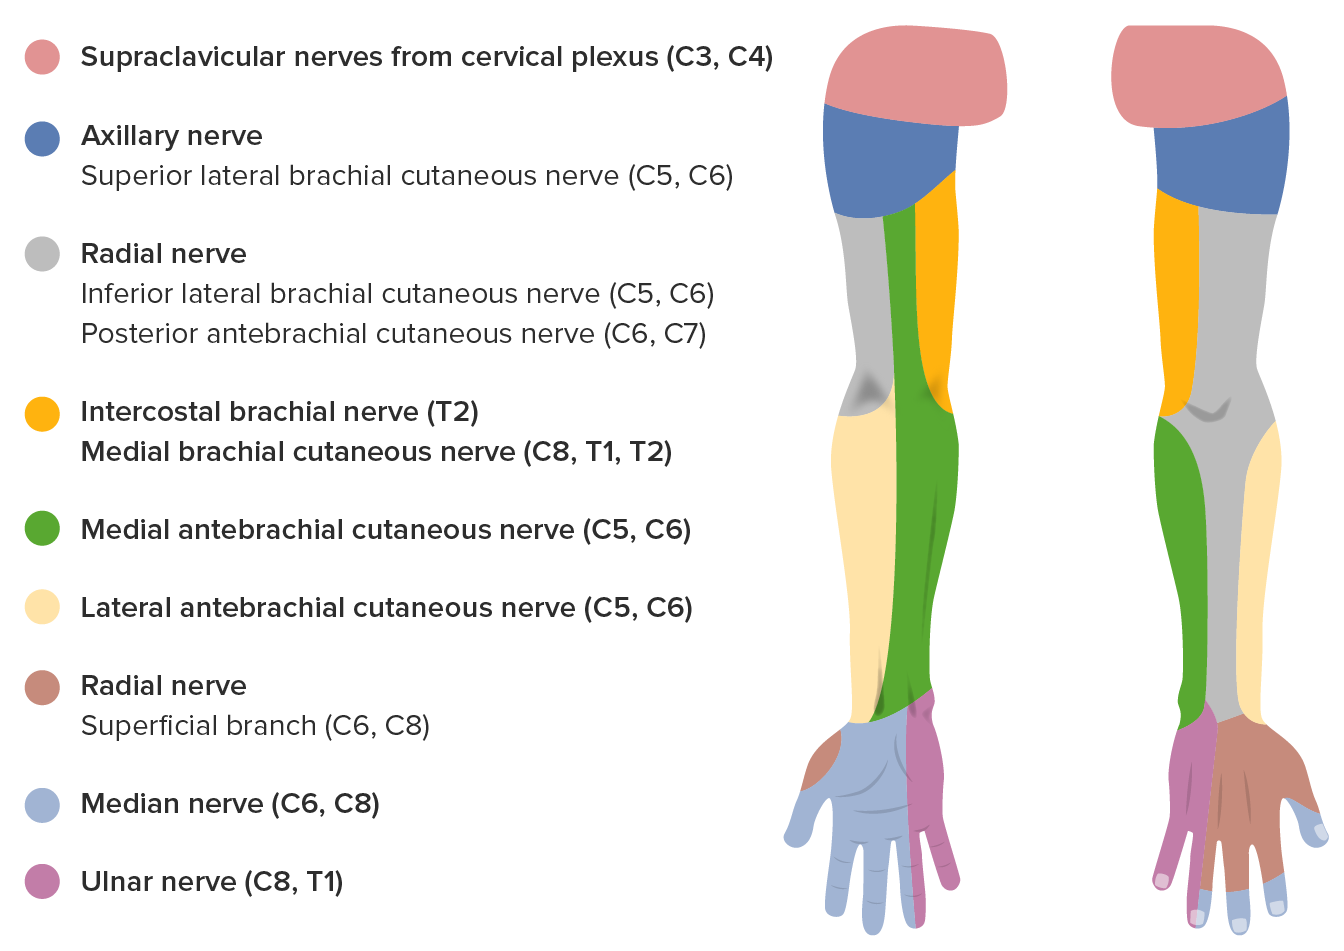 Sensory innervation of the median nerve